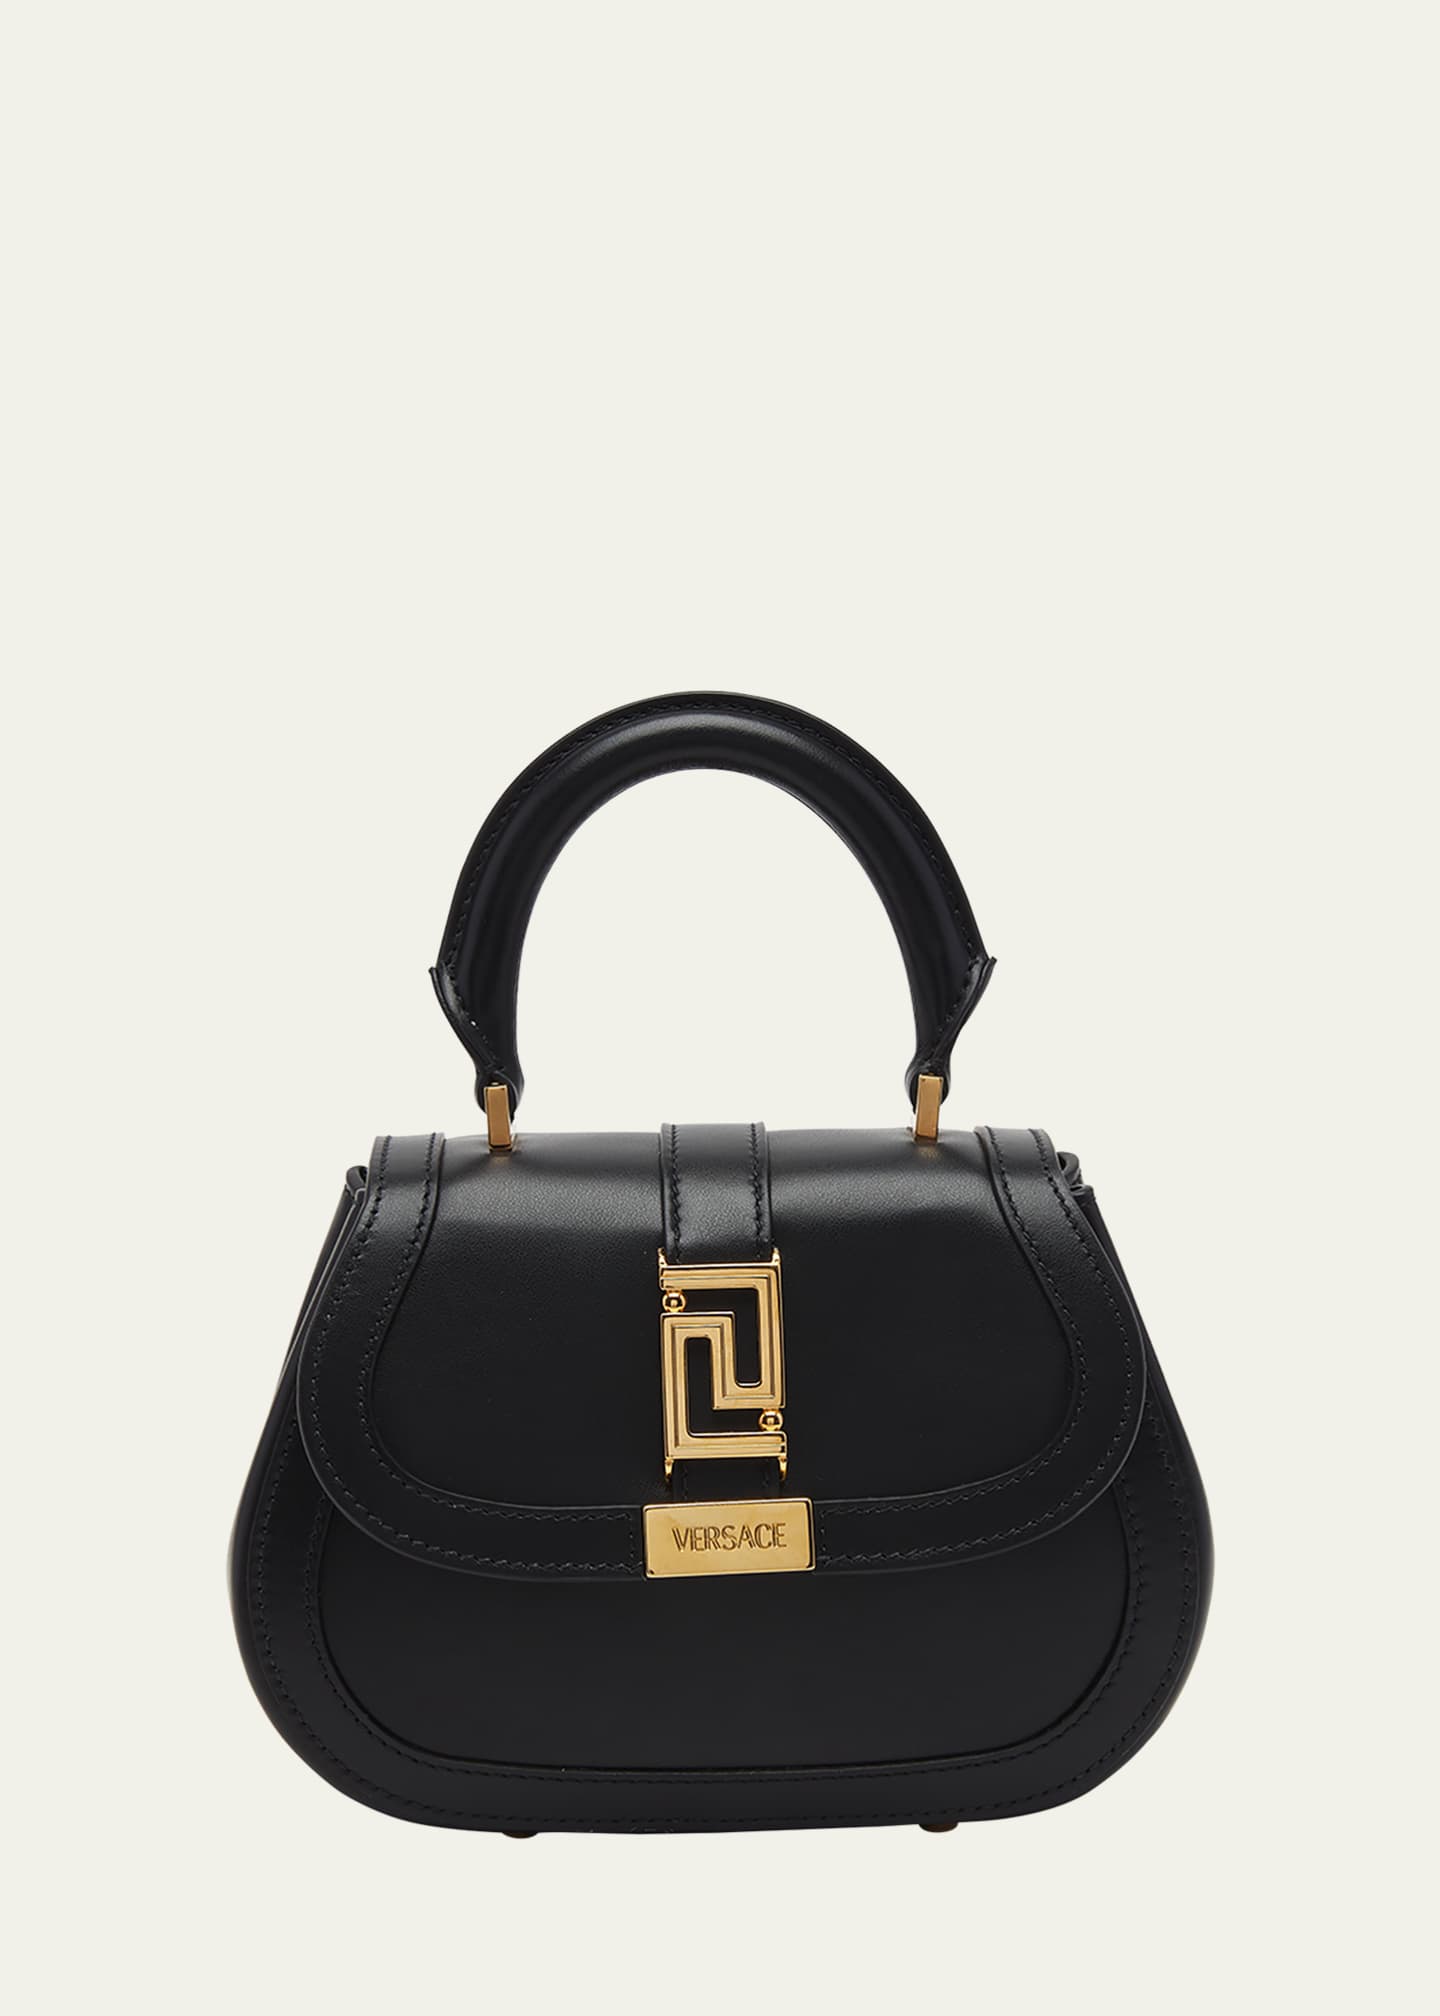 Greca Goddess Mini Leather Tote Bag in Black - Versace